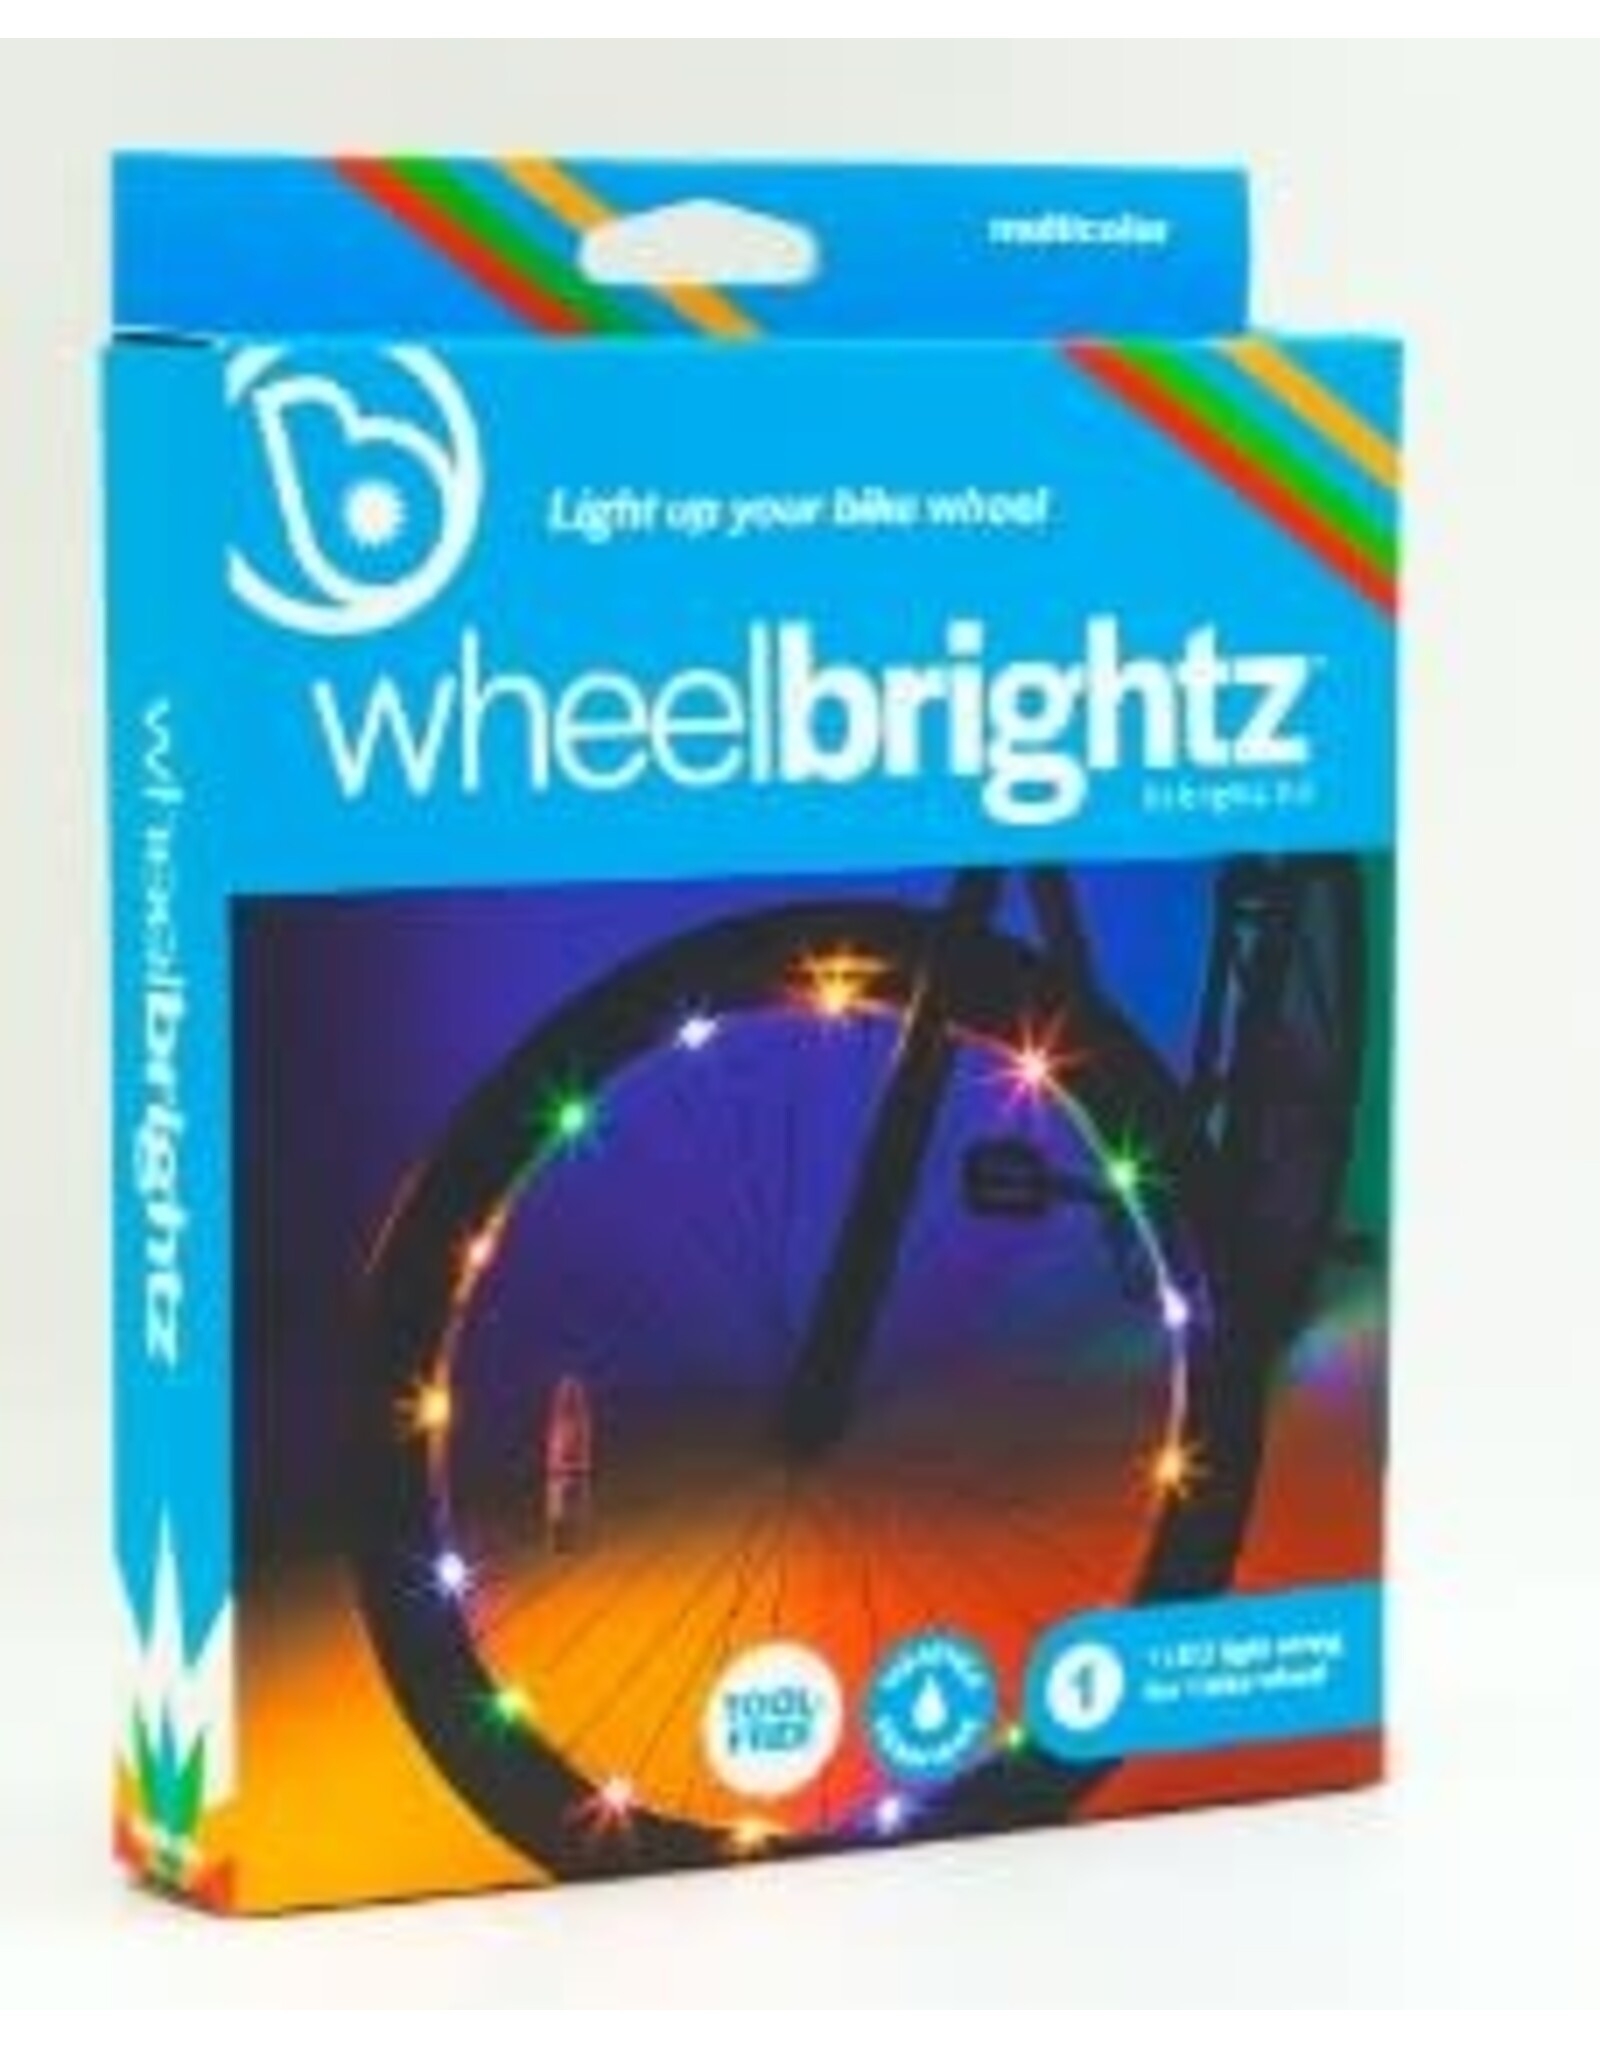 Brightz Wheel Brightz - Multicolor